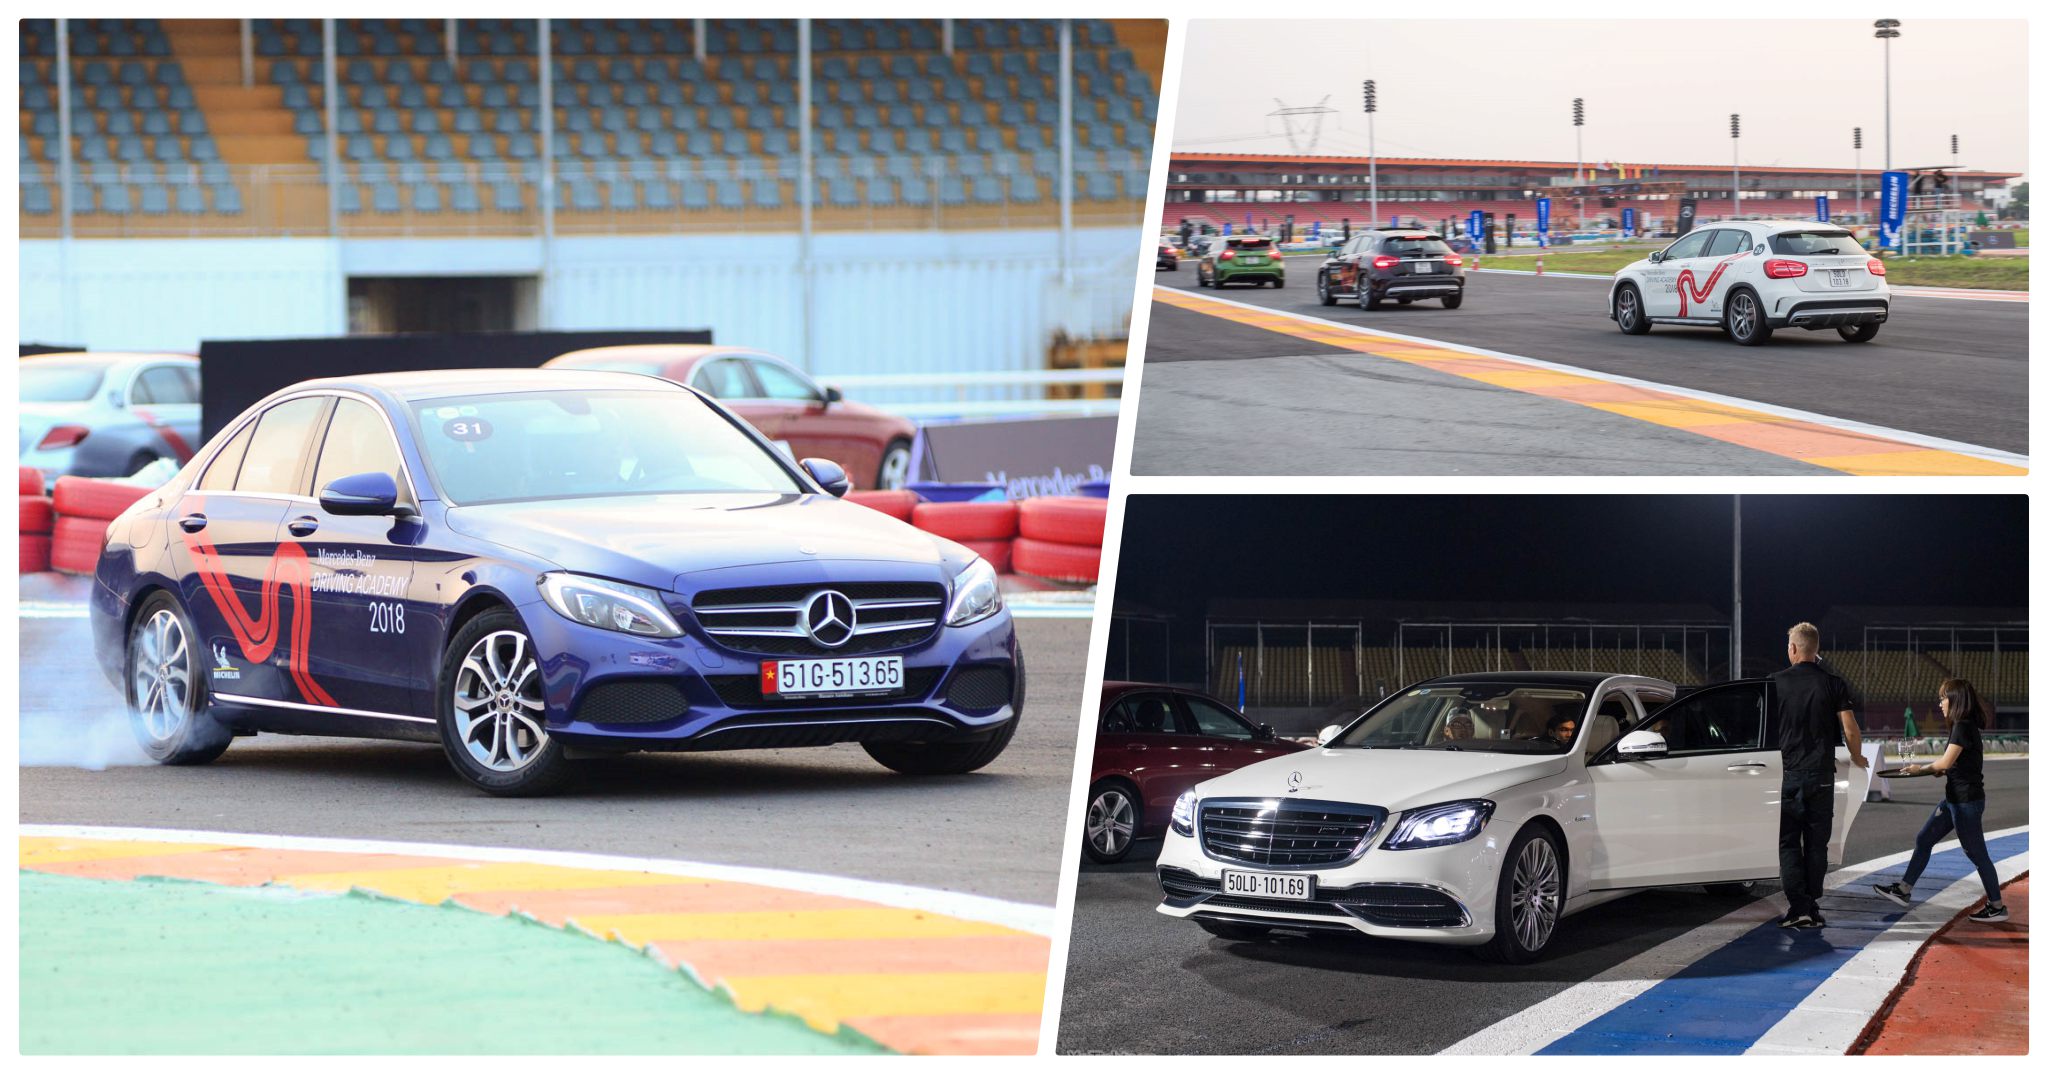 Mercedes-Benz Driving Academy 2018 - chạy Hot Lap, Drift nhiều hơn, trải nghiệm Maybach like-a-boss